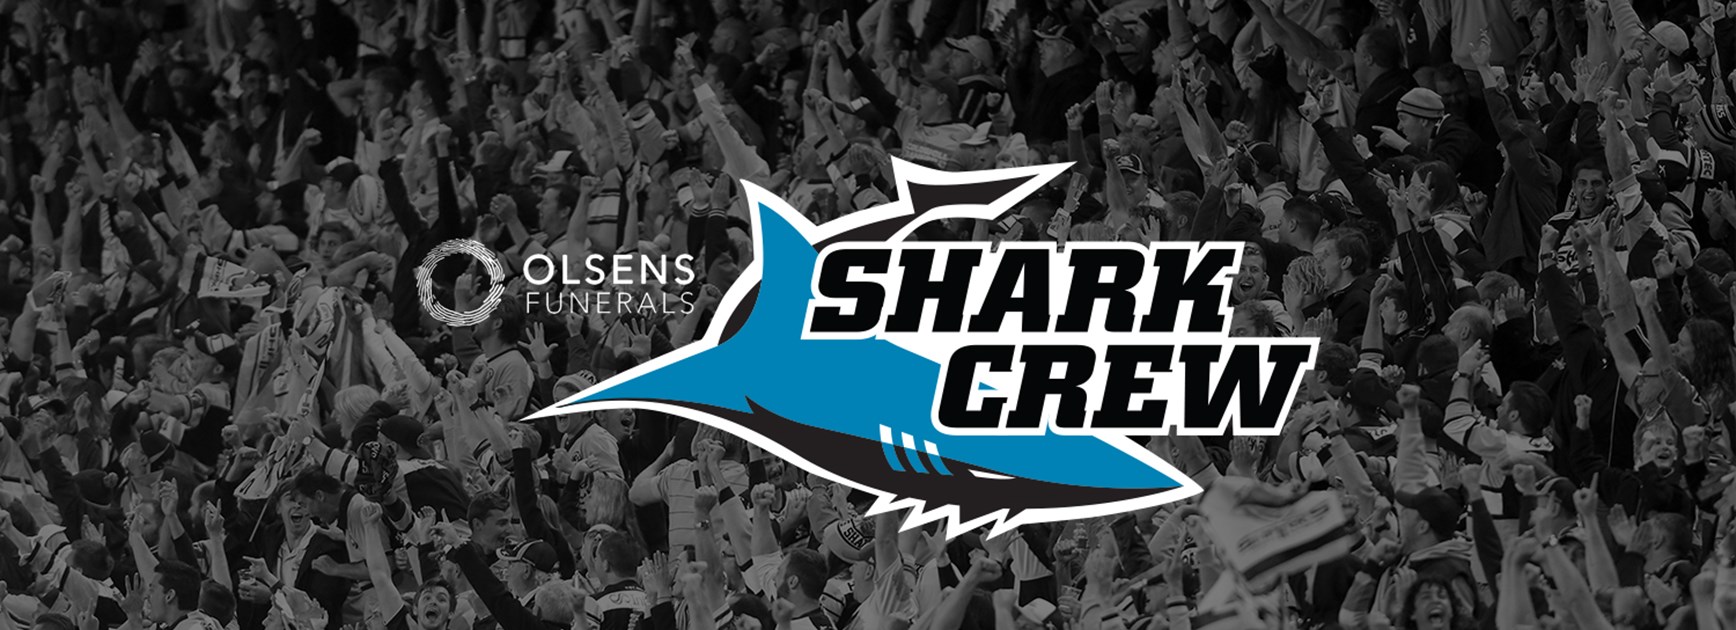 Join the Olsens Shark Crew in 2018